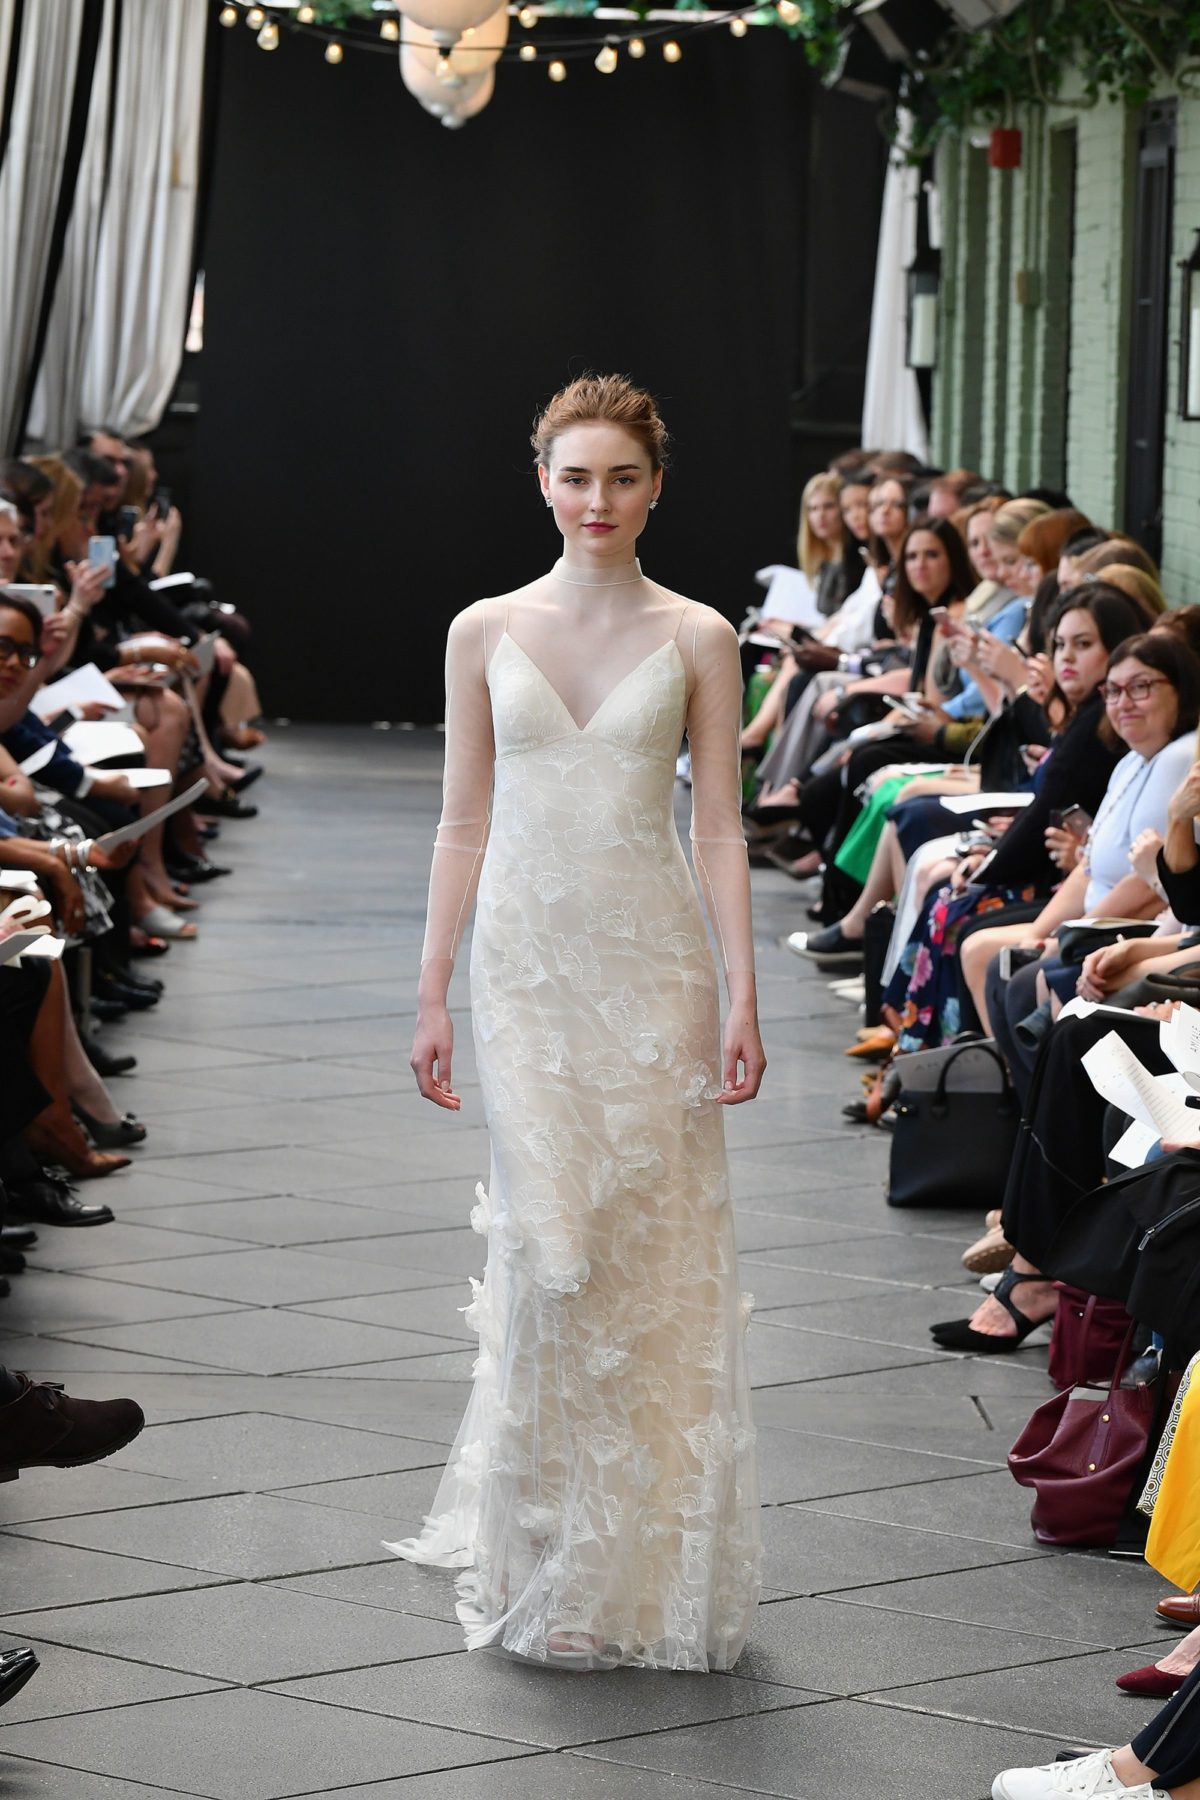 Свадебная коллекция платьев Amsale 2020